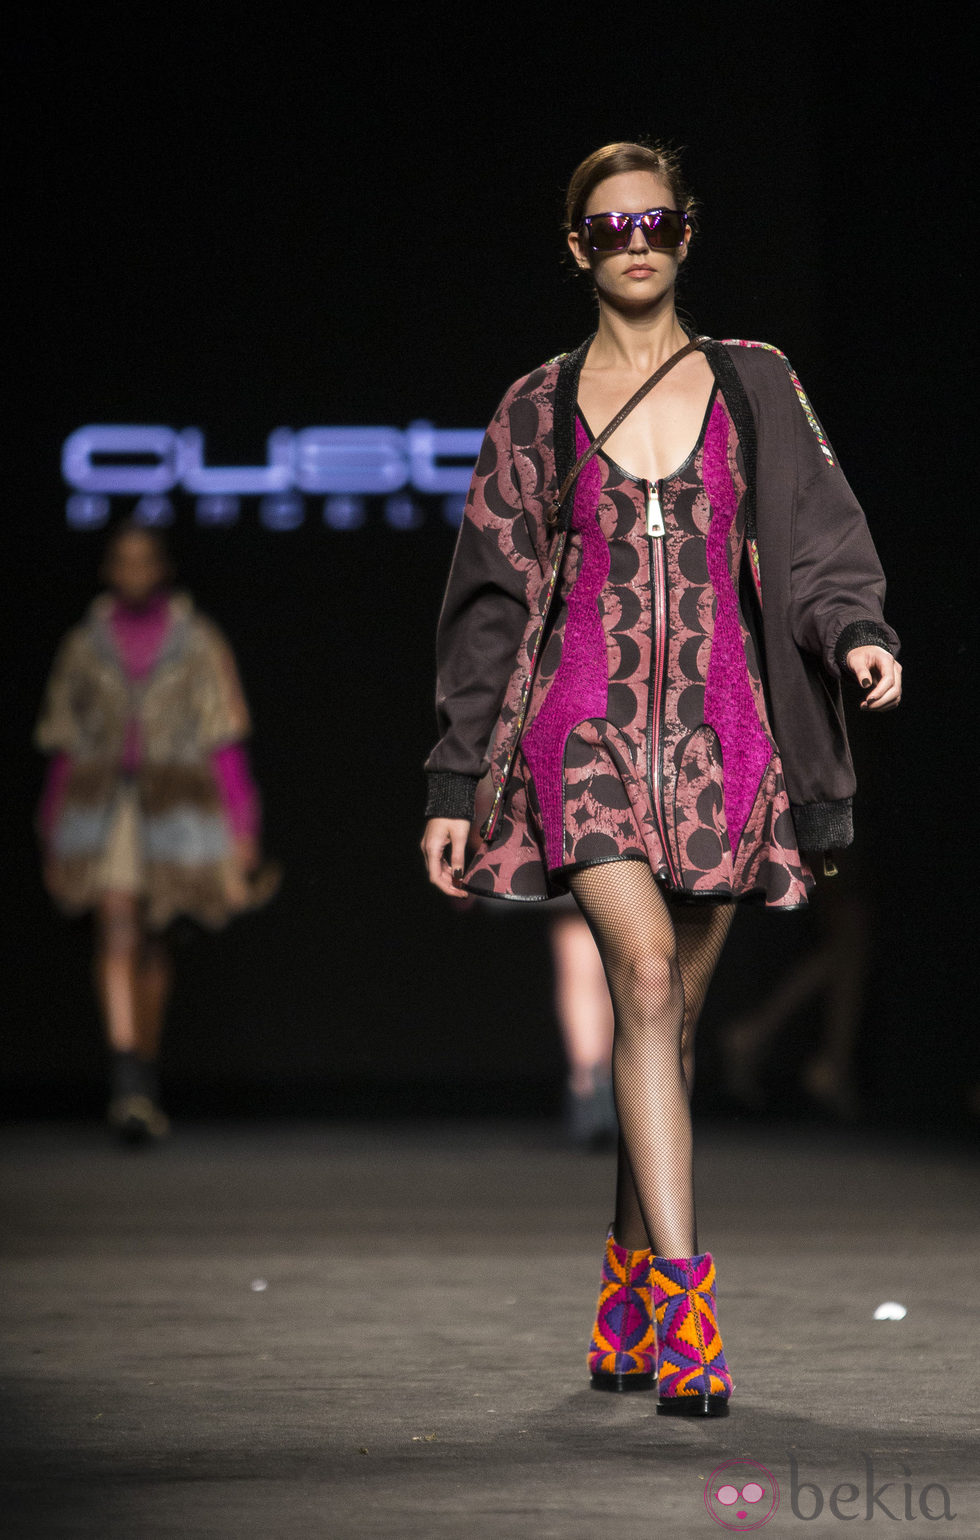 Vestido y abrigo cond etalles en fucsia de Custo Barcelona en la 080 Barcelona Fashion 2015